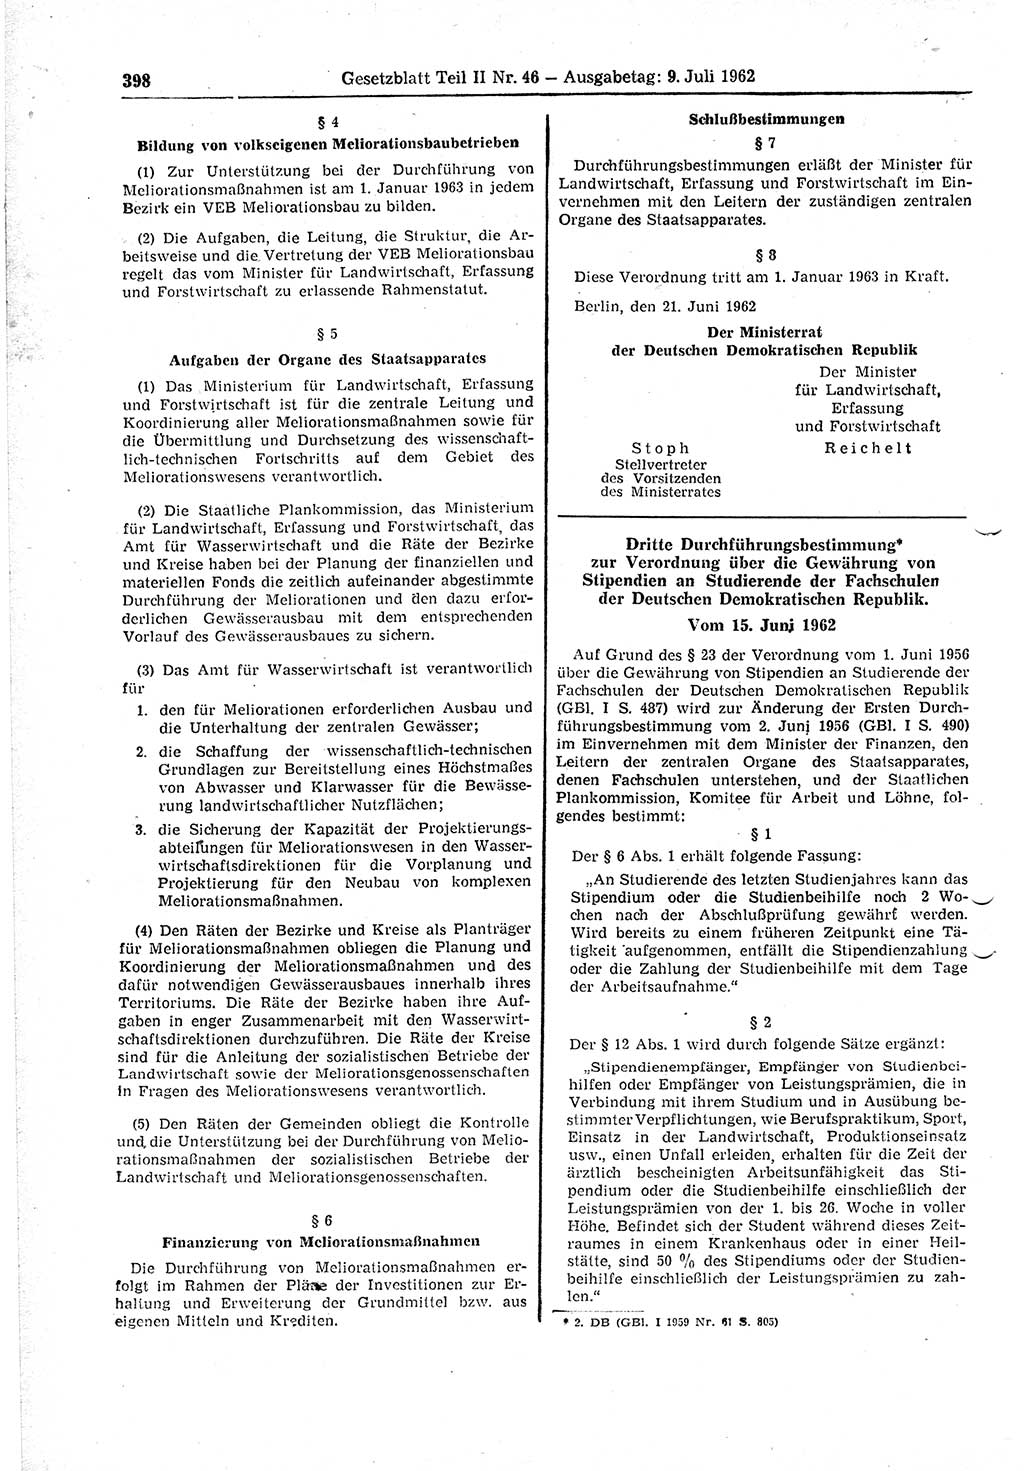 Gesetzblatt (GBl.) der Deutschen Demokratischen Republik (DDR) Teil ⅠⅠ 1962, Seite 398 (GBl. DDR ⅠⅠ 1962, S. 398)